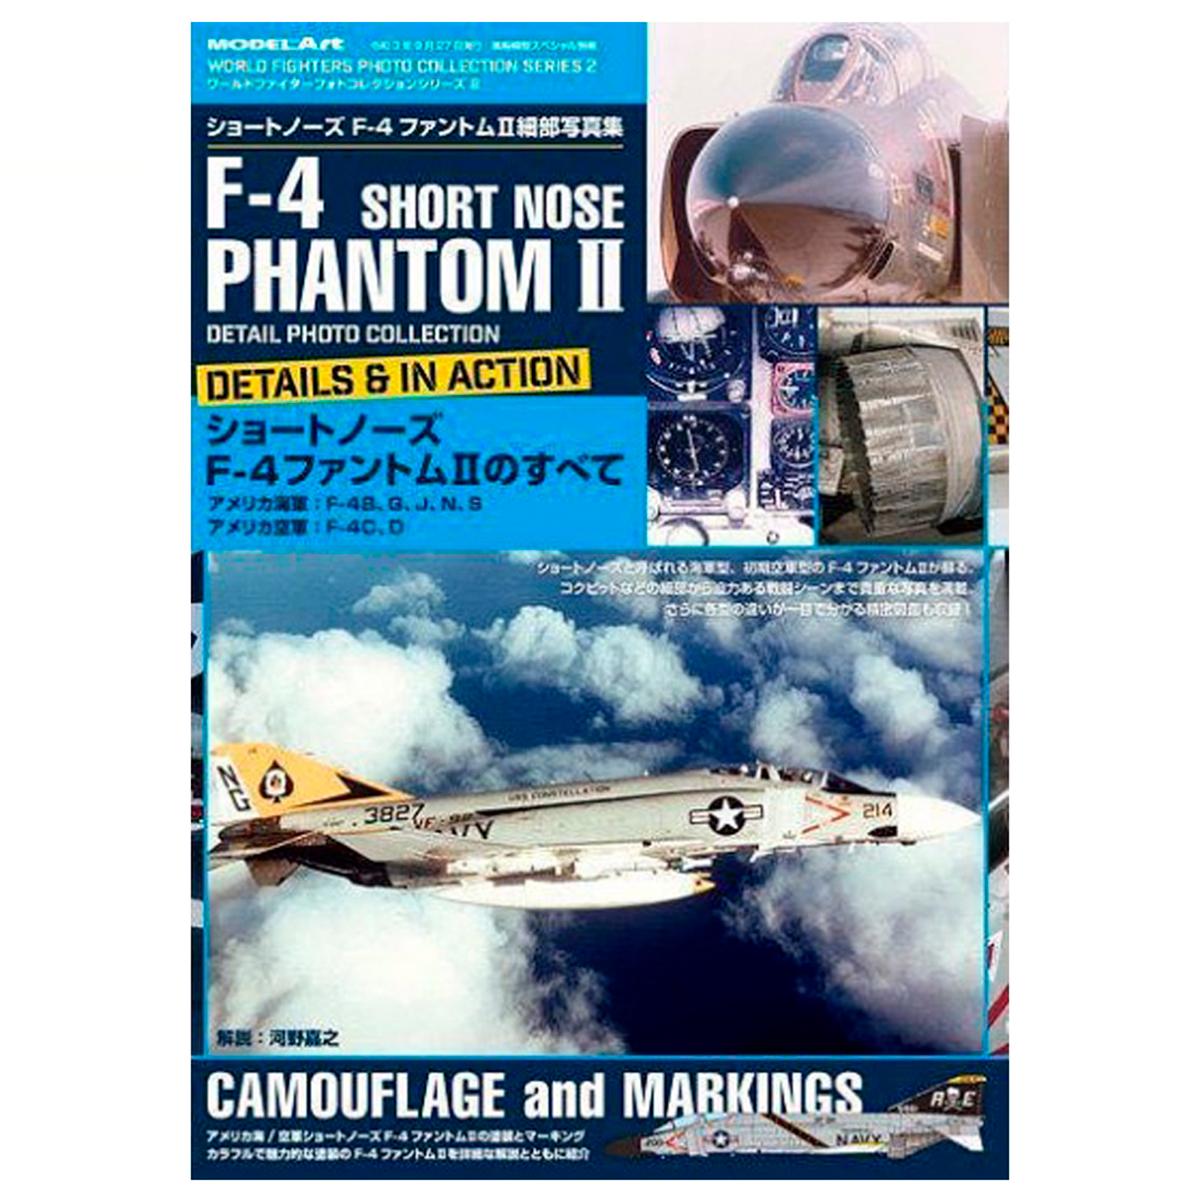 F-4 PHANTOM II SHORT NOSE – Colección de fotografías en detalle